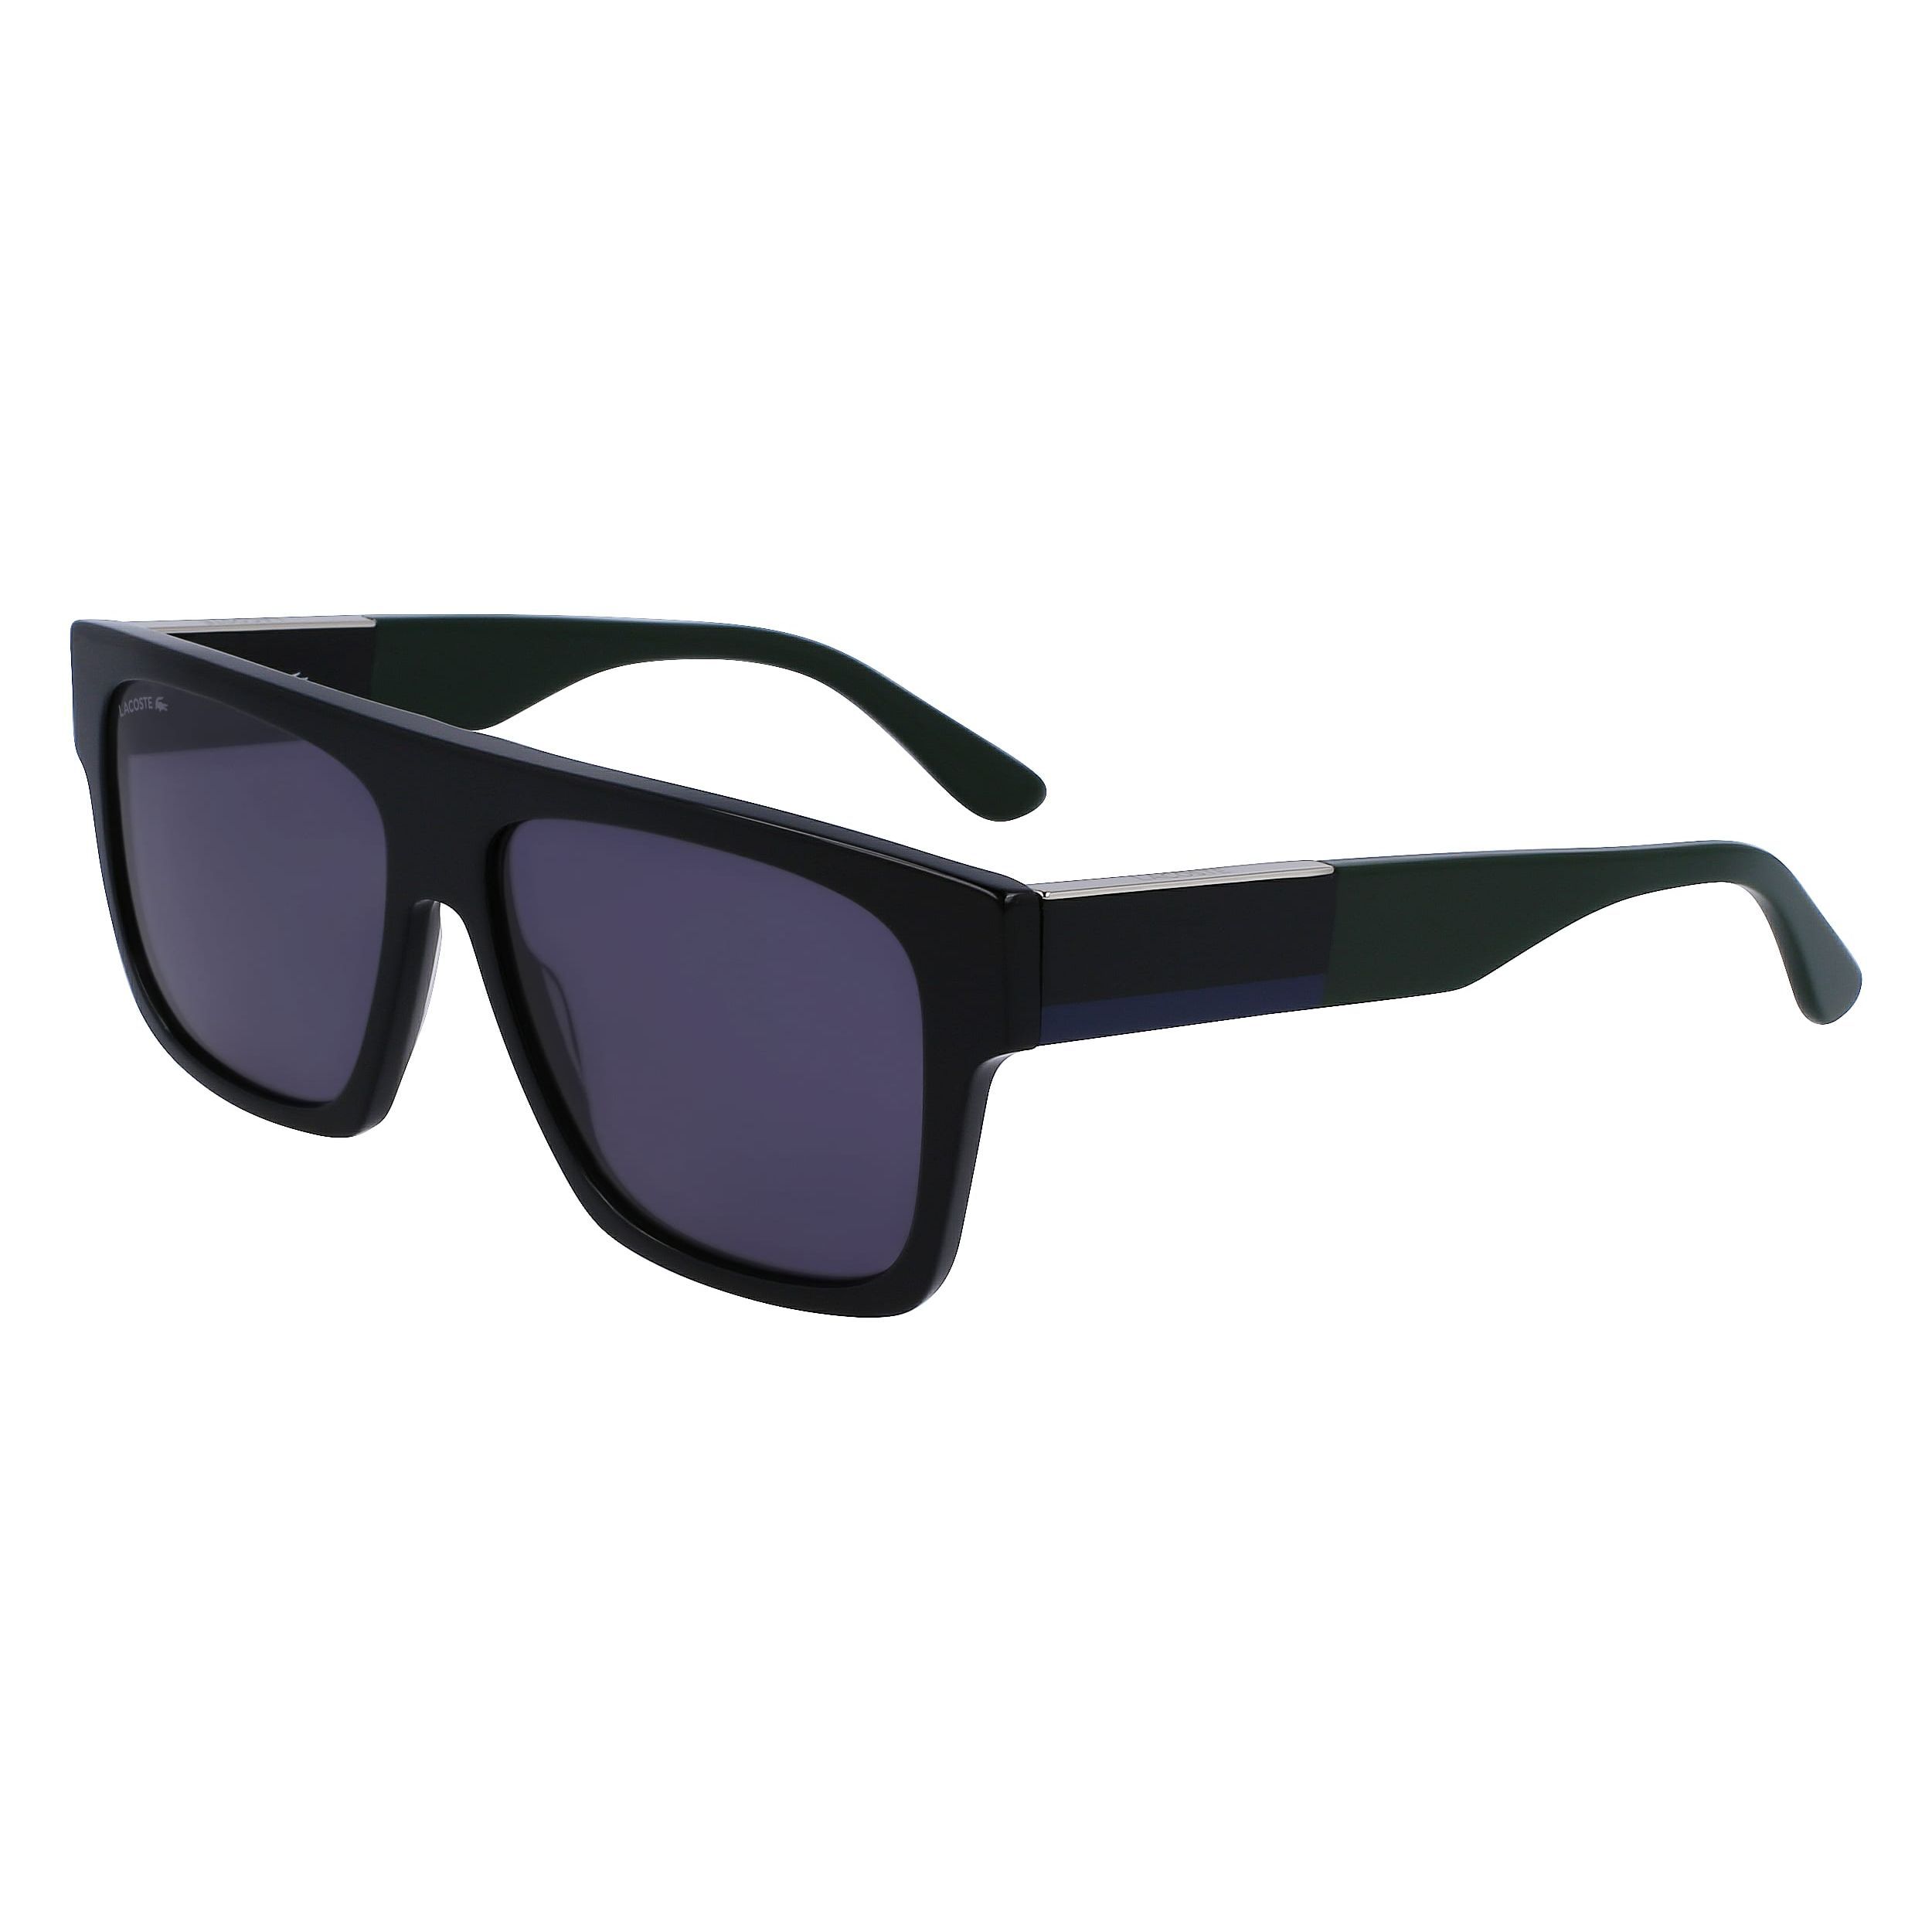 L984S Square Sunglasses 001 - size 57